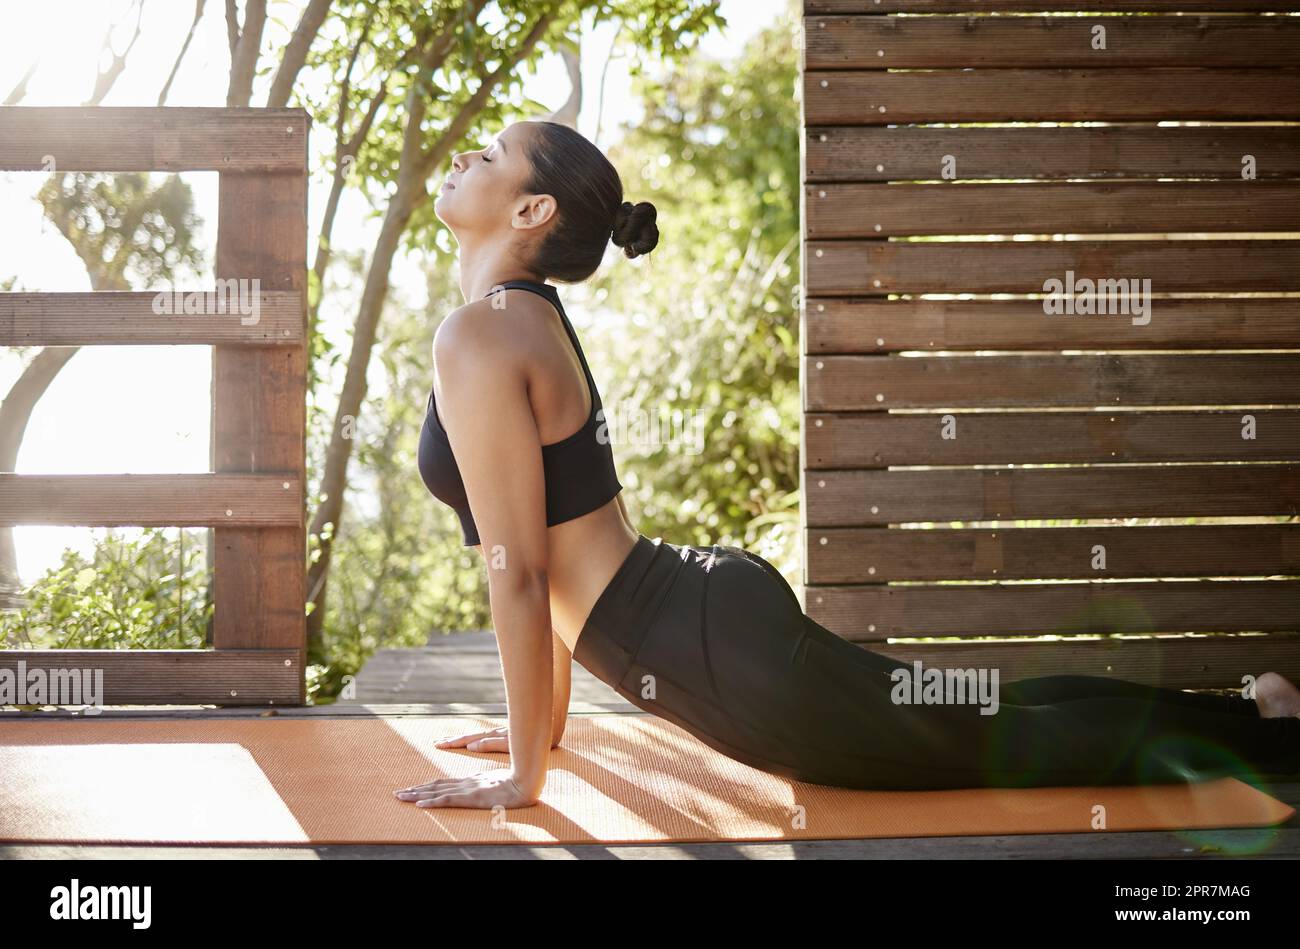 Étirez vos limites. Prise de vue en longueur d'une jeune athlète féminine inreconnaissable pratiquant le yoga en plein air. Banque D'Images